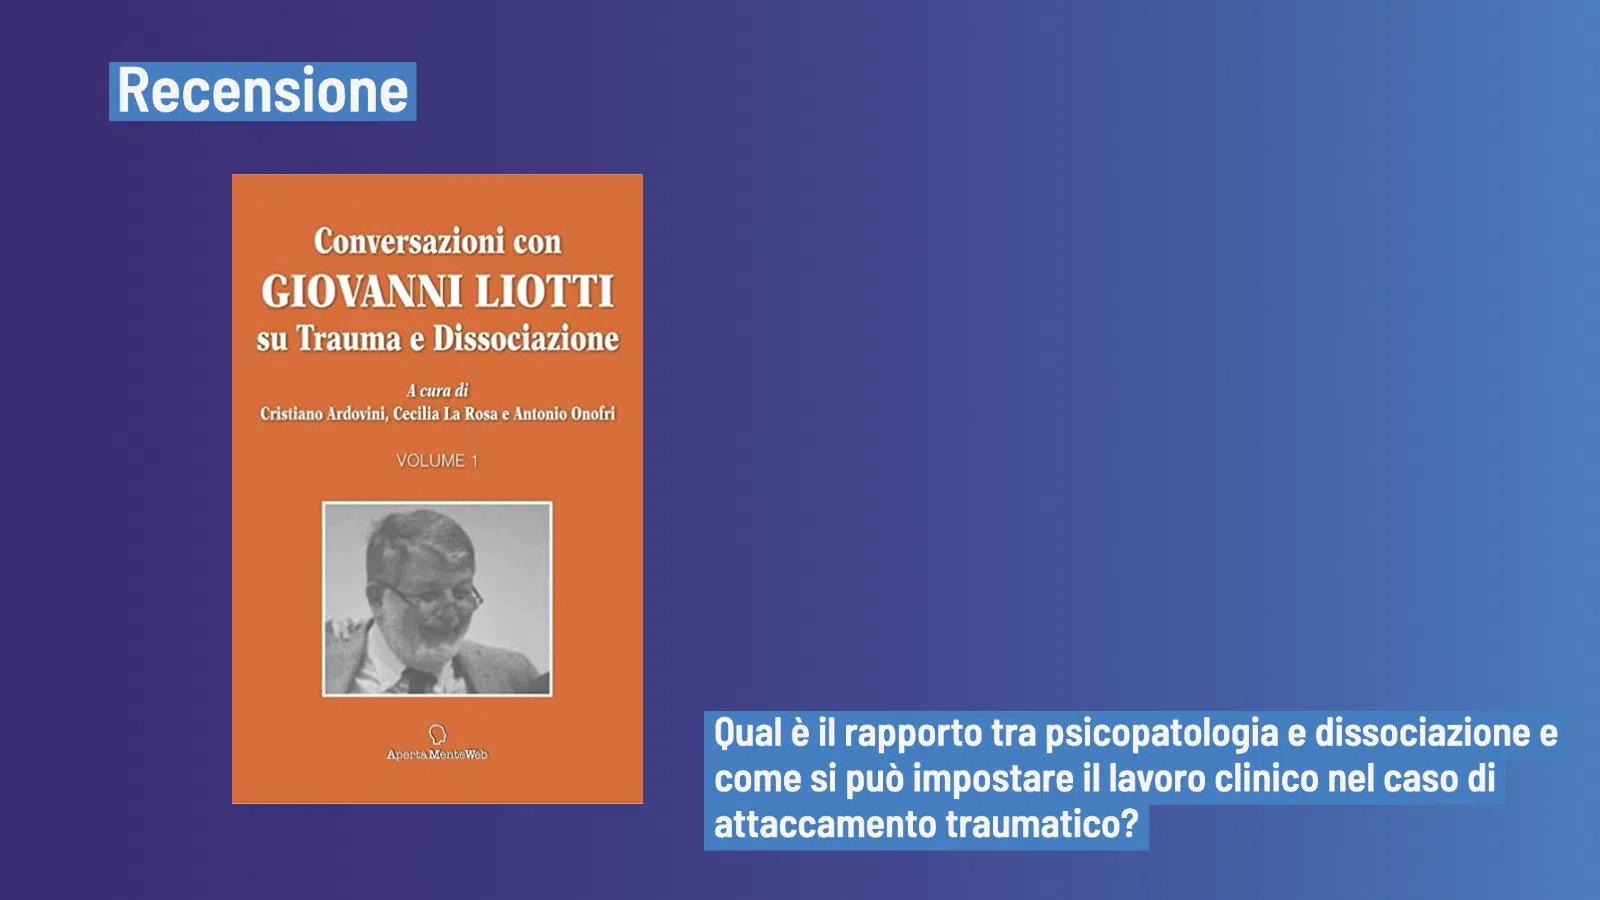 Conversazioni con Giovanni Liotti (2022) - Recensione del libro